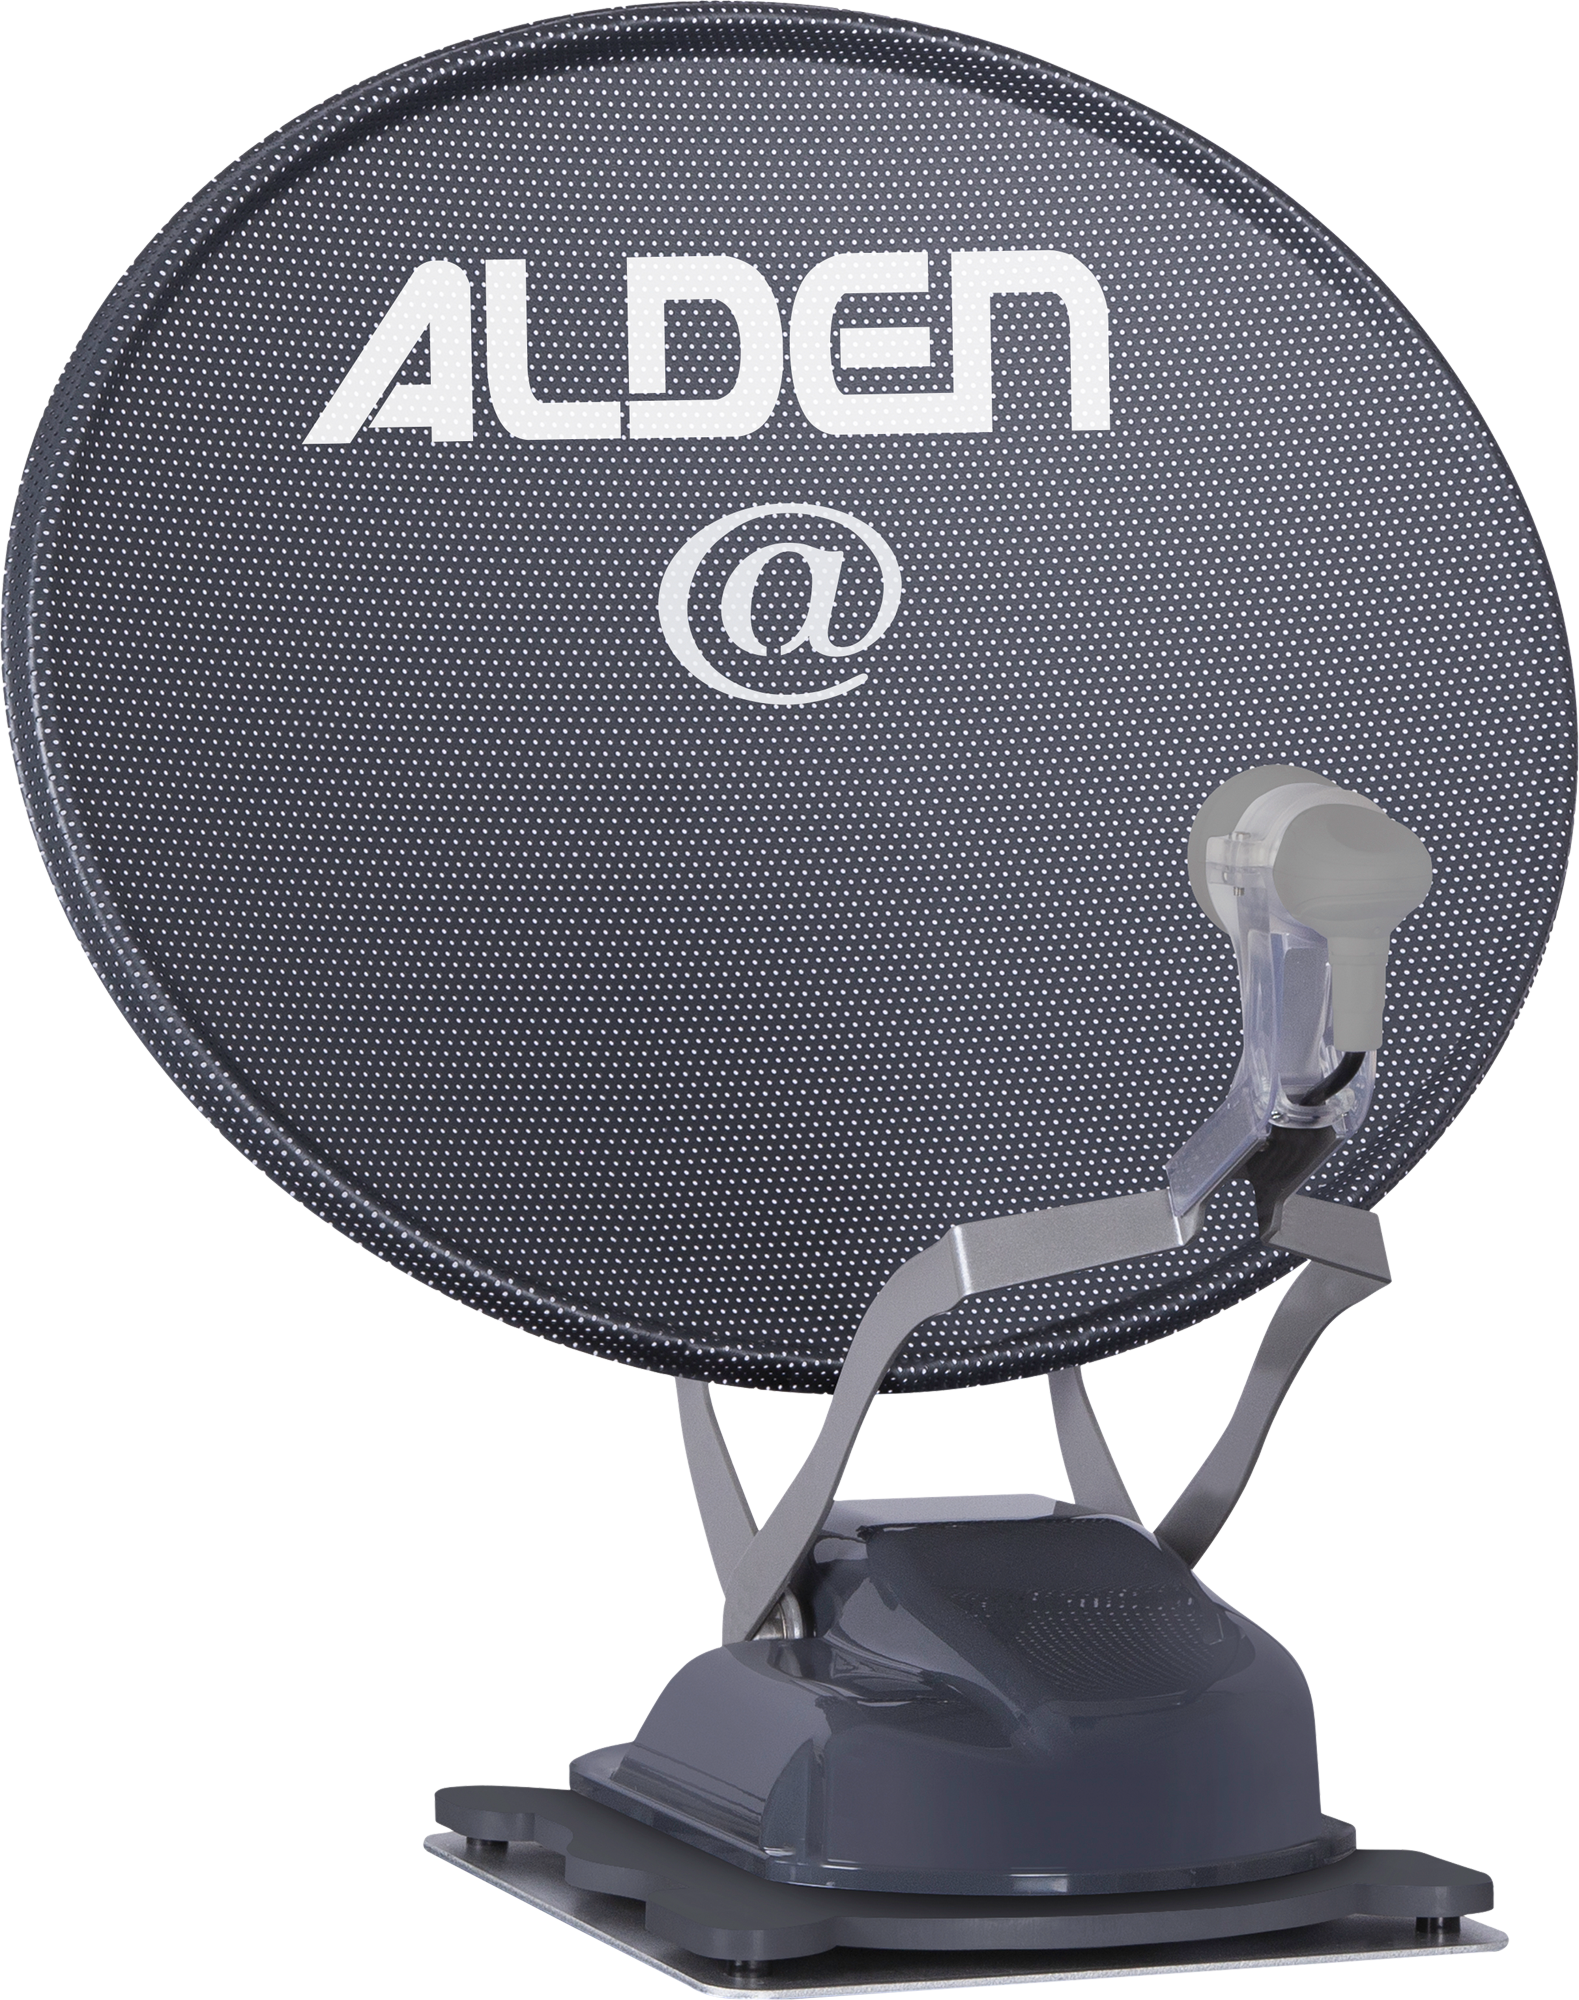 Alden Onelight@ 60 HD EVO vollautomatische Satellitenanlage Platinium inklusive LTE Antenne und A.I.O. Smart TV mit integrierter Antennensteuerung  24 Zoll